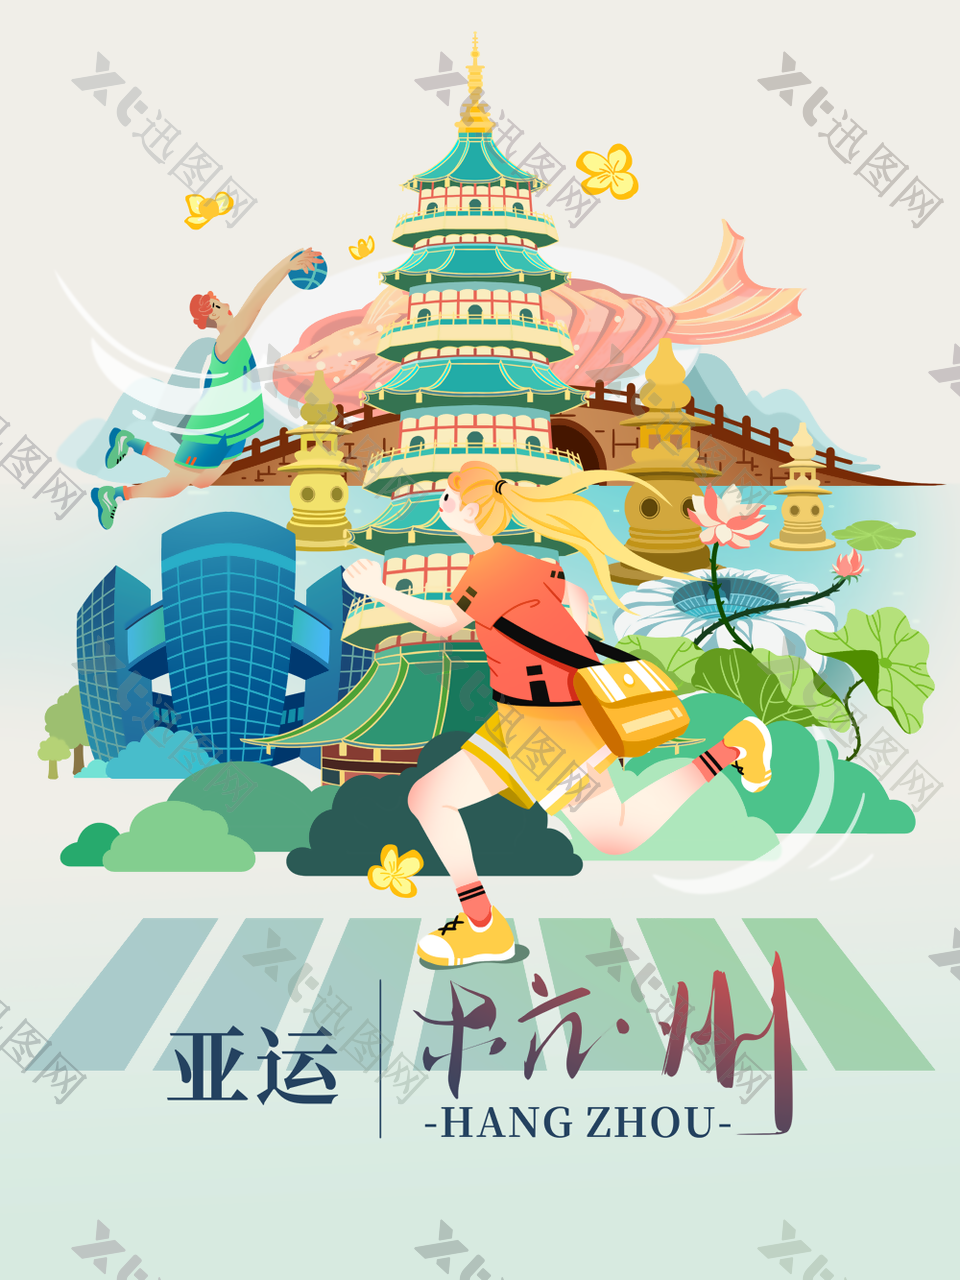 创意清新手绘插画风杭州亚运会海报图设计